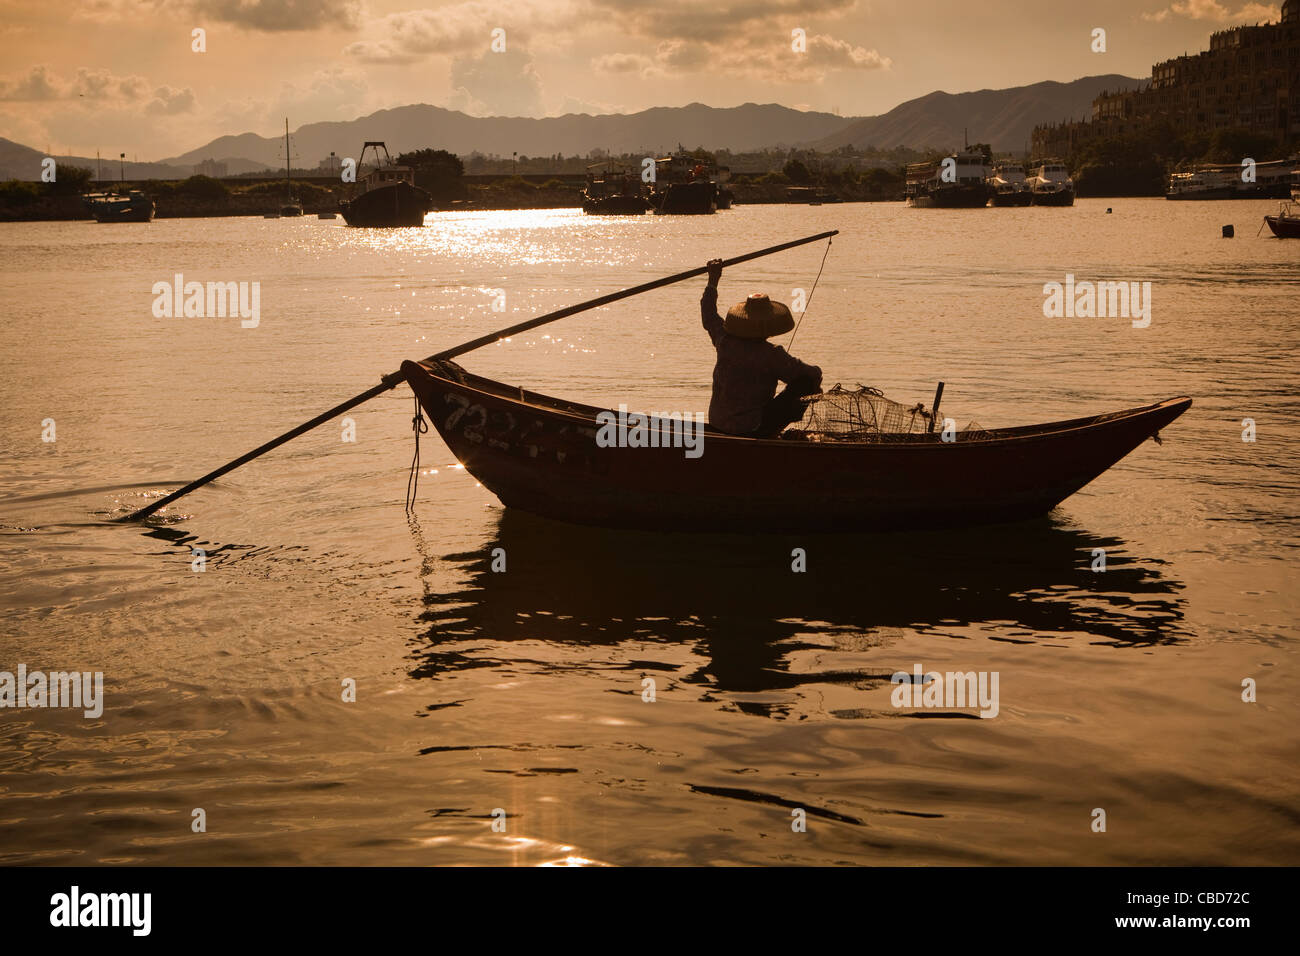 Vieille Femme en bateau de pêche traditionnel, Sau Mun Tsai Village de pêcheurs, Hong Kong, Chine Banque D'Images